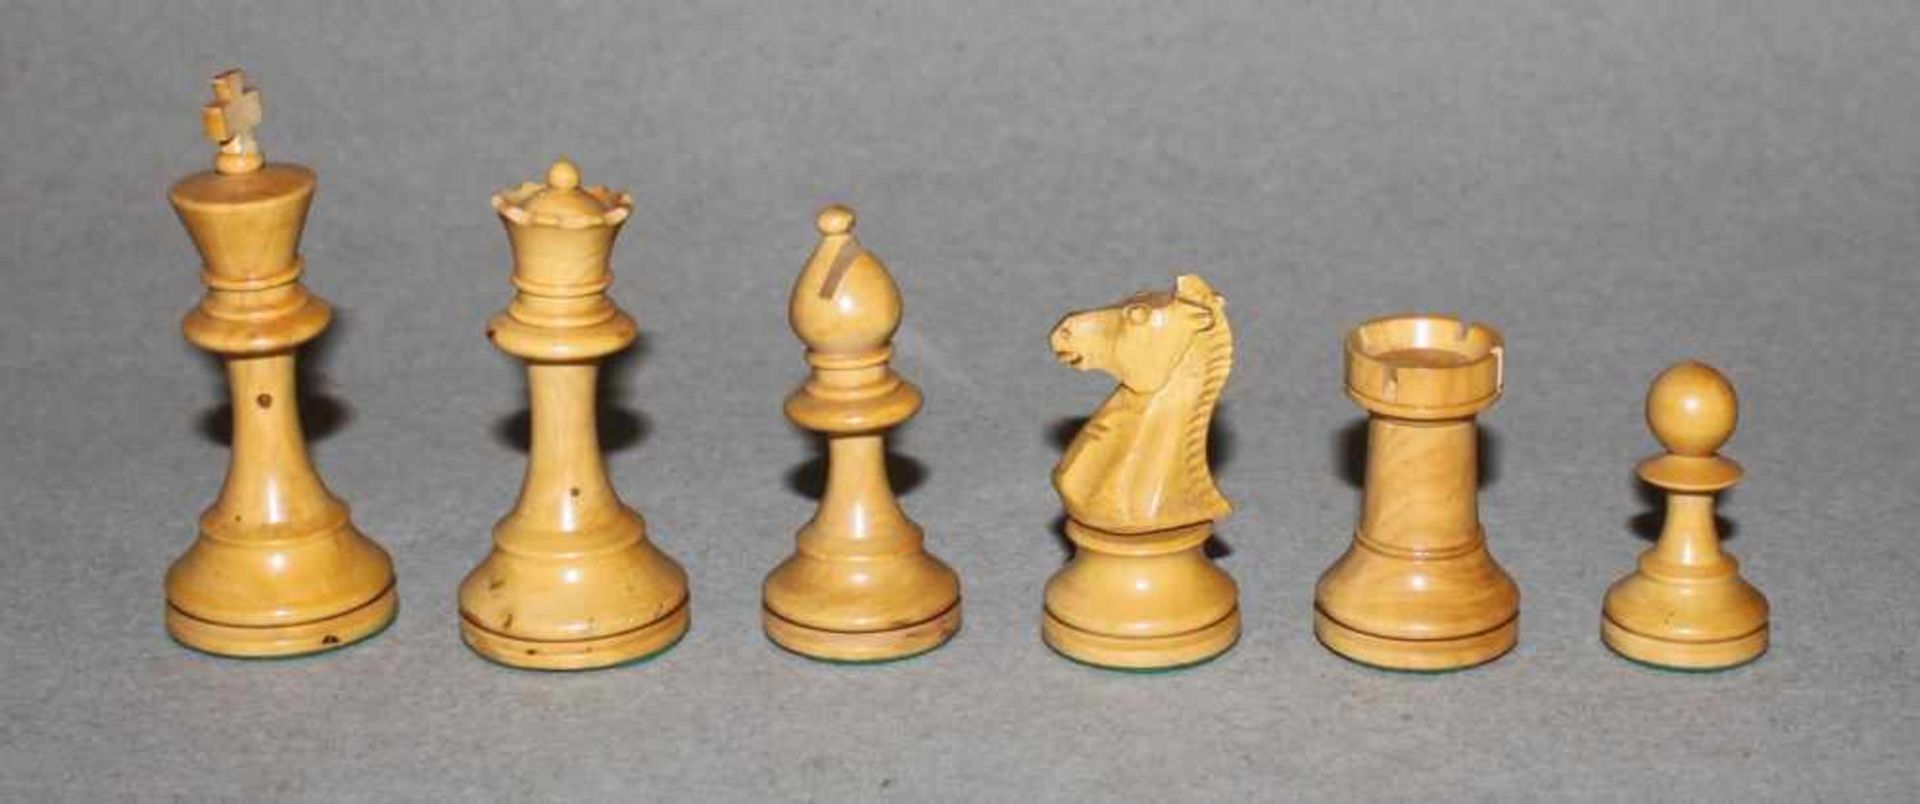 Europa. Zwei Staunton Schachspiele aus Holz.Eine Partei in schwarz, die andere naturfarben. - Bild 2 aus 6